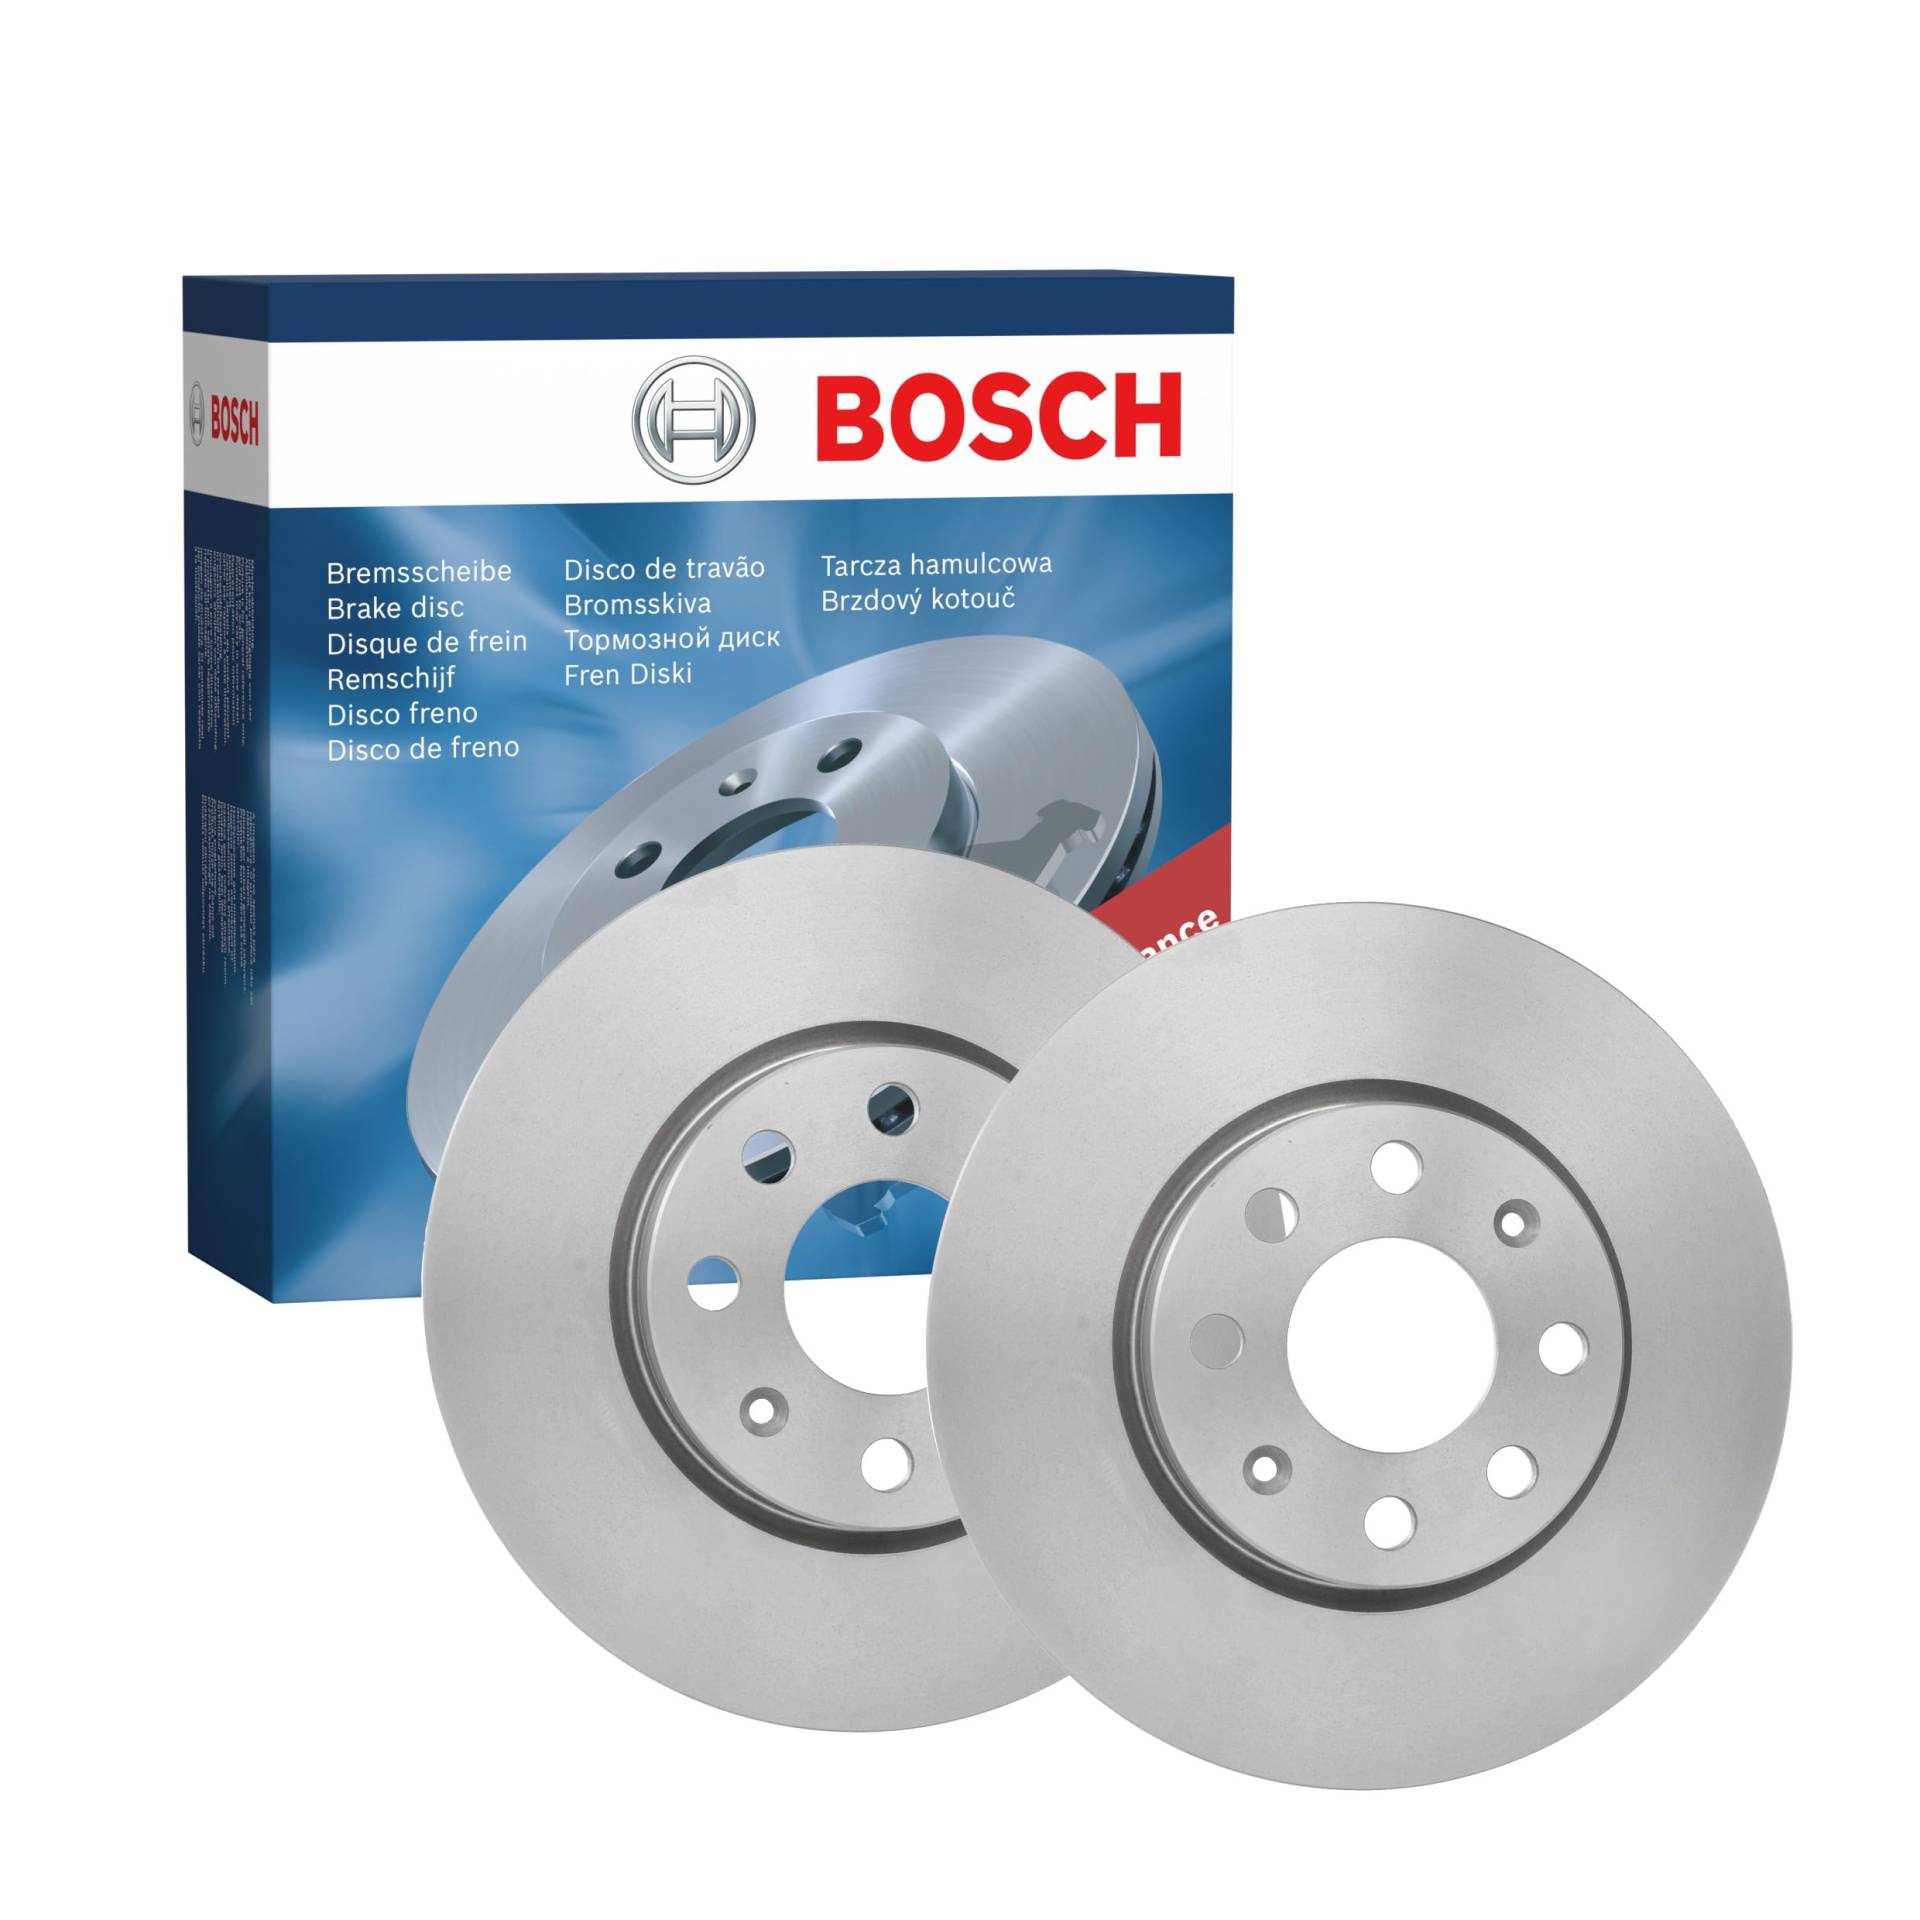 Bosch BD1090 Bremsscheiben - Vorderachse - ECE-R90 Zertifizierung - zwei Bremsscheiben pro Set von Bosch Automotive